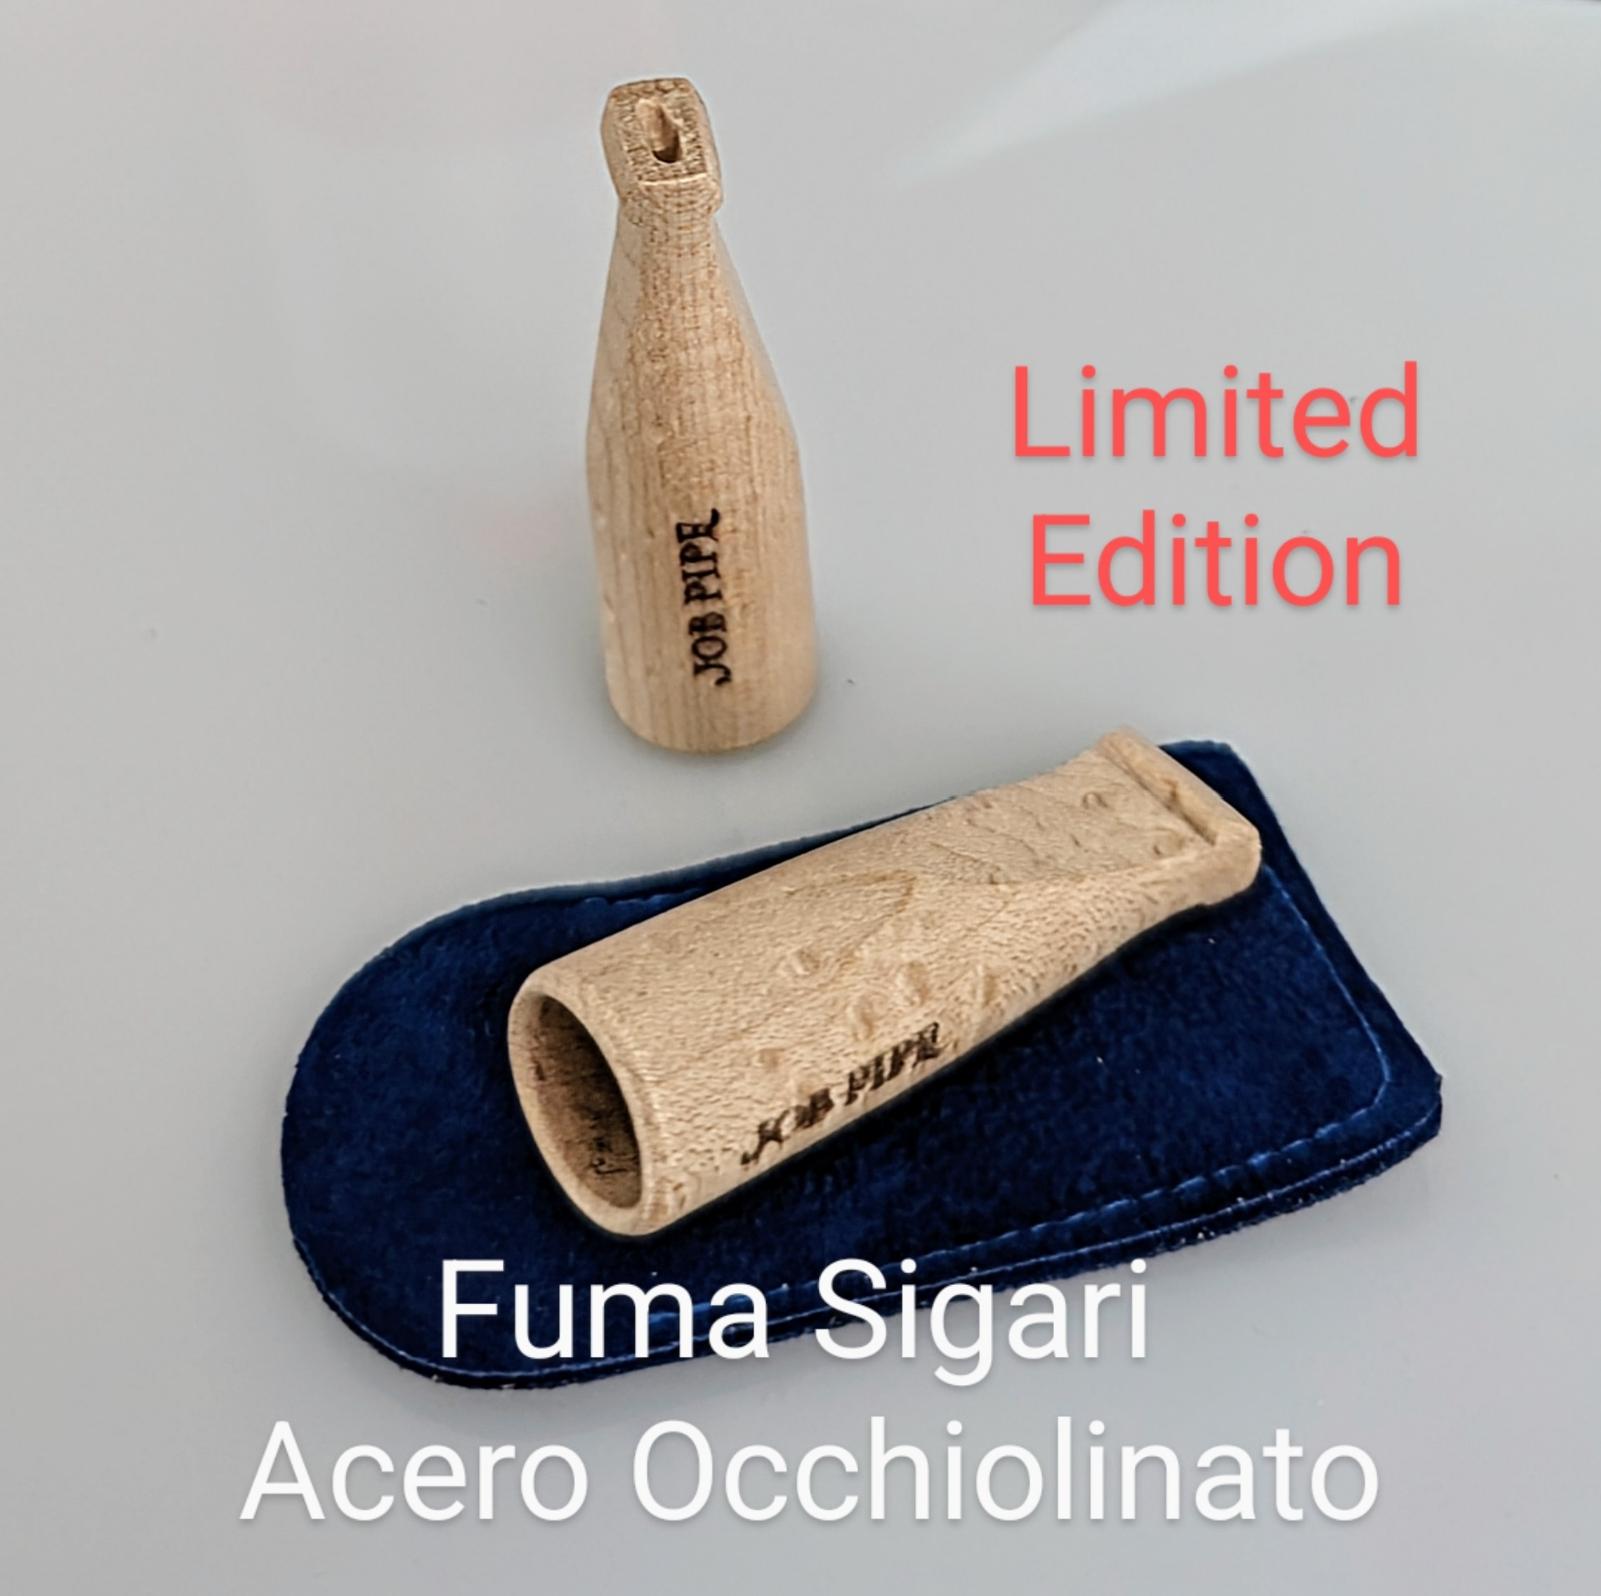 Job Pipe Fuma sigari in Acero Occhiolinato (Limited Edition)